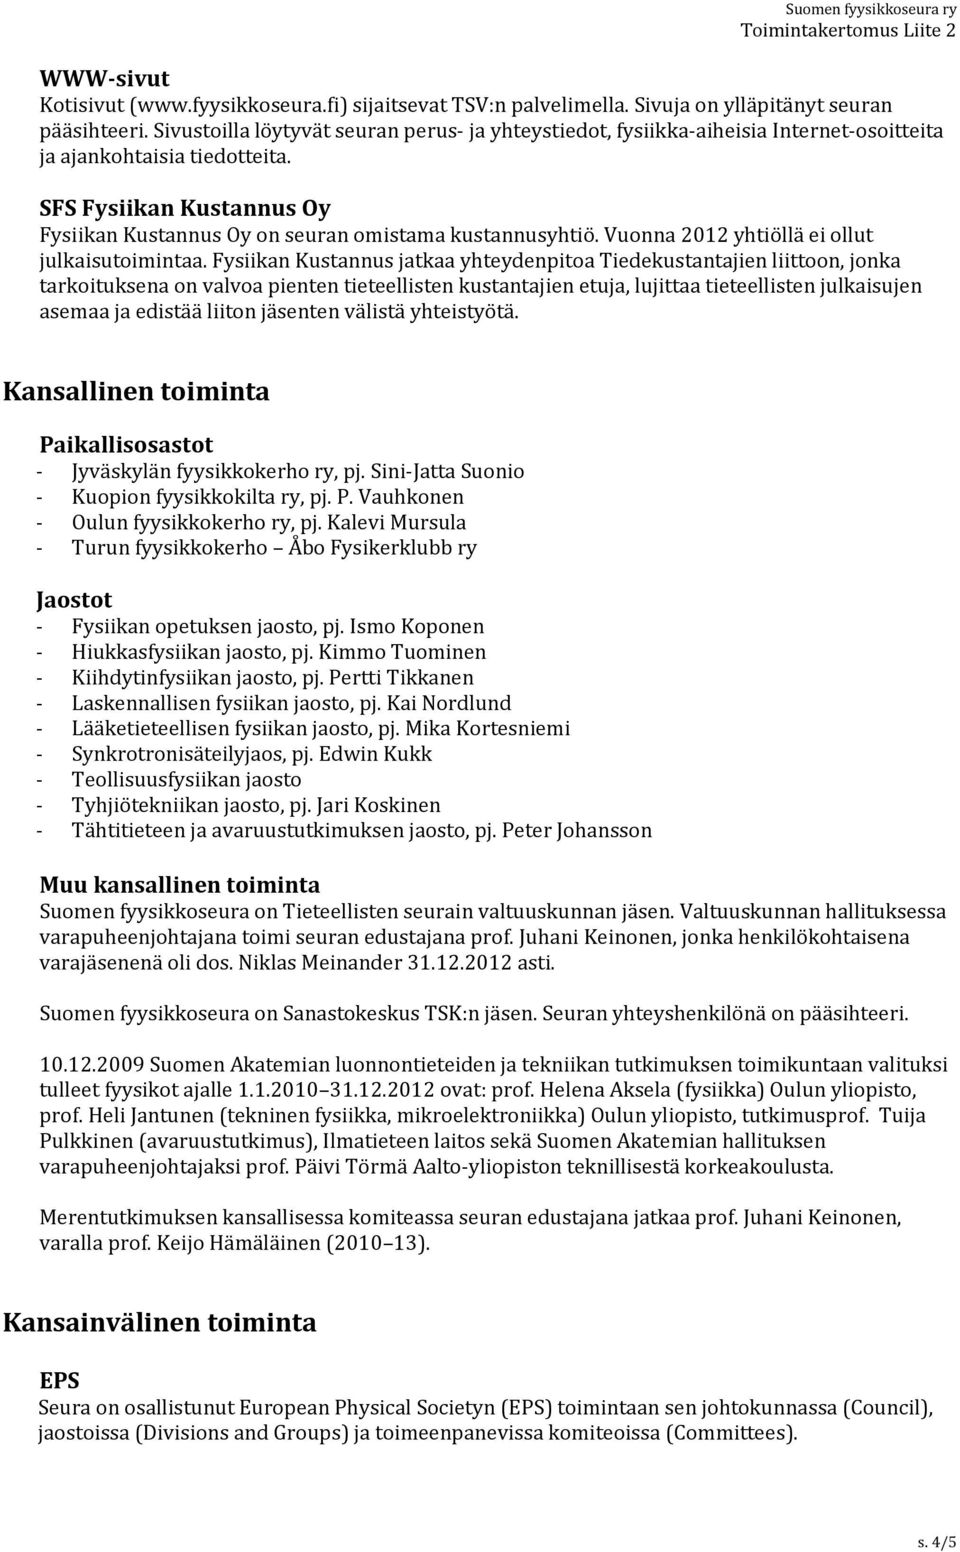 SFS Fysiikan Kustannus Oy Fysiikan Kustannus Oy on seuran omistama kustannusyhtiö. Vuonna 2012 yhtiöllä ei ollut julkaisutoimintaa.